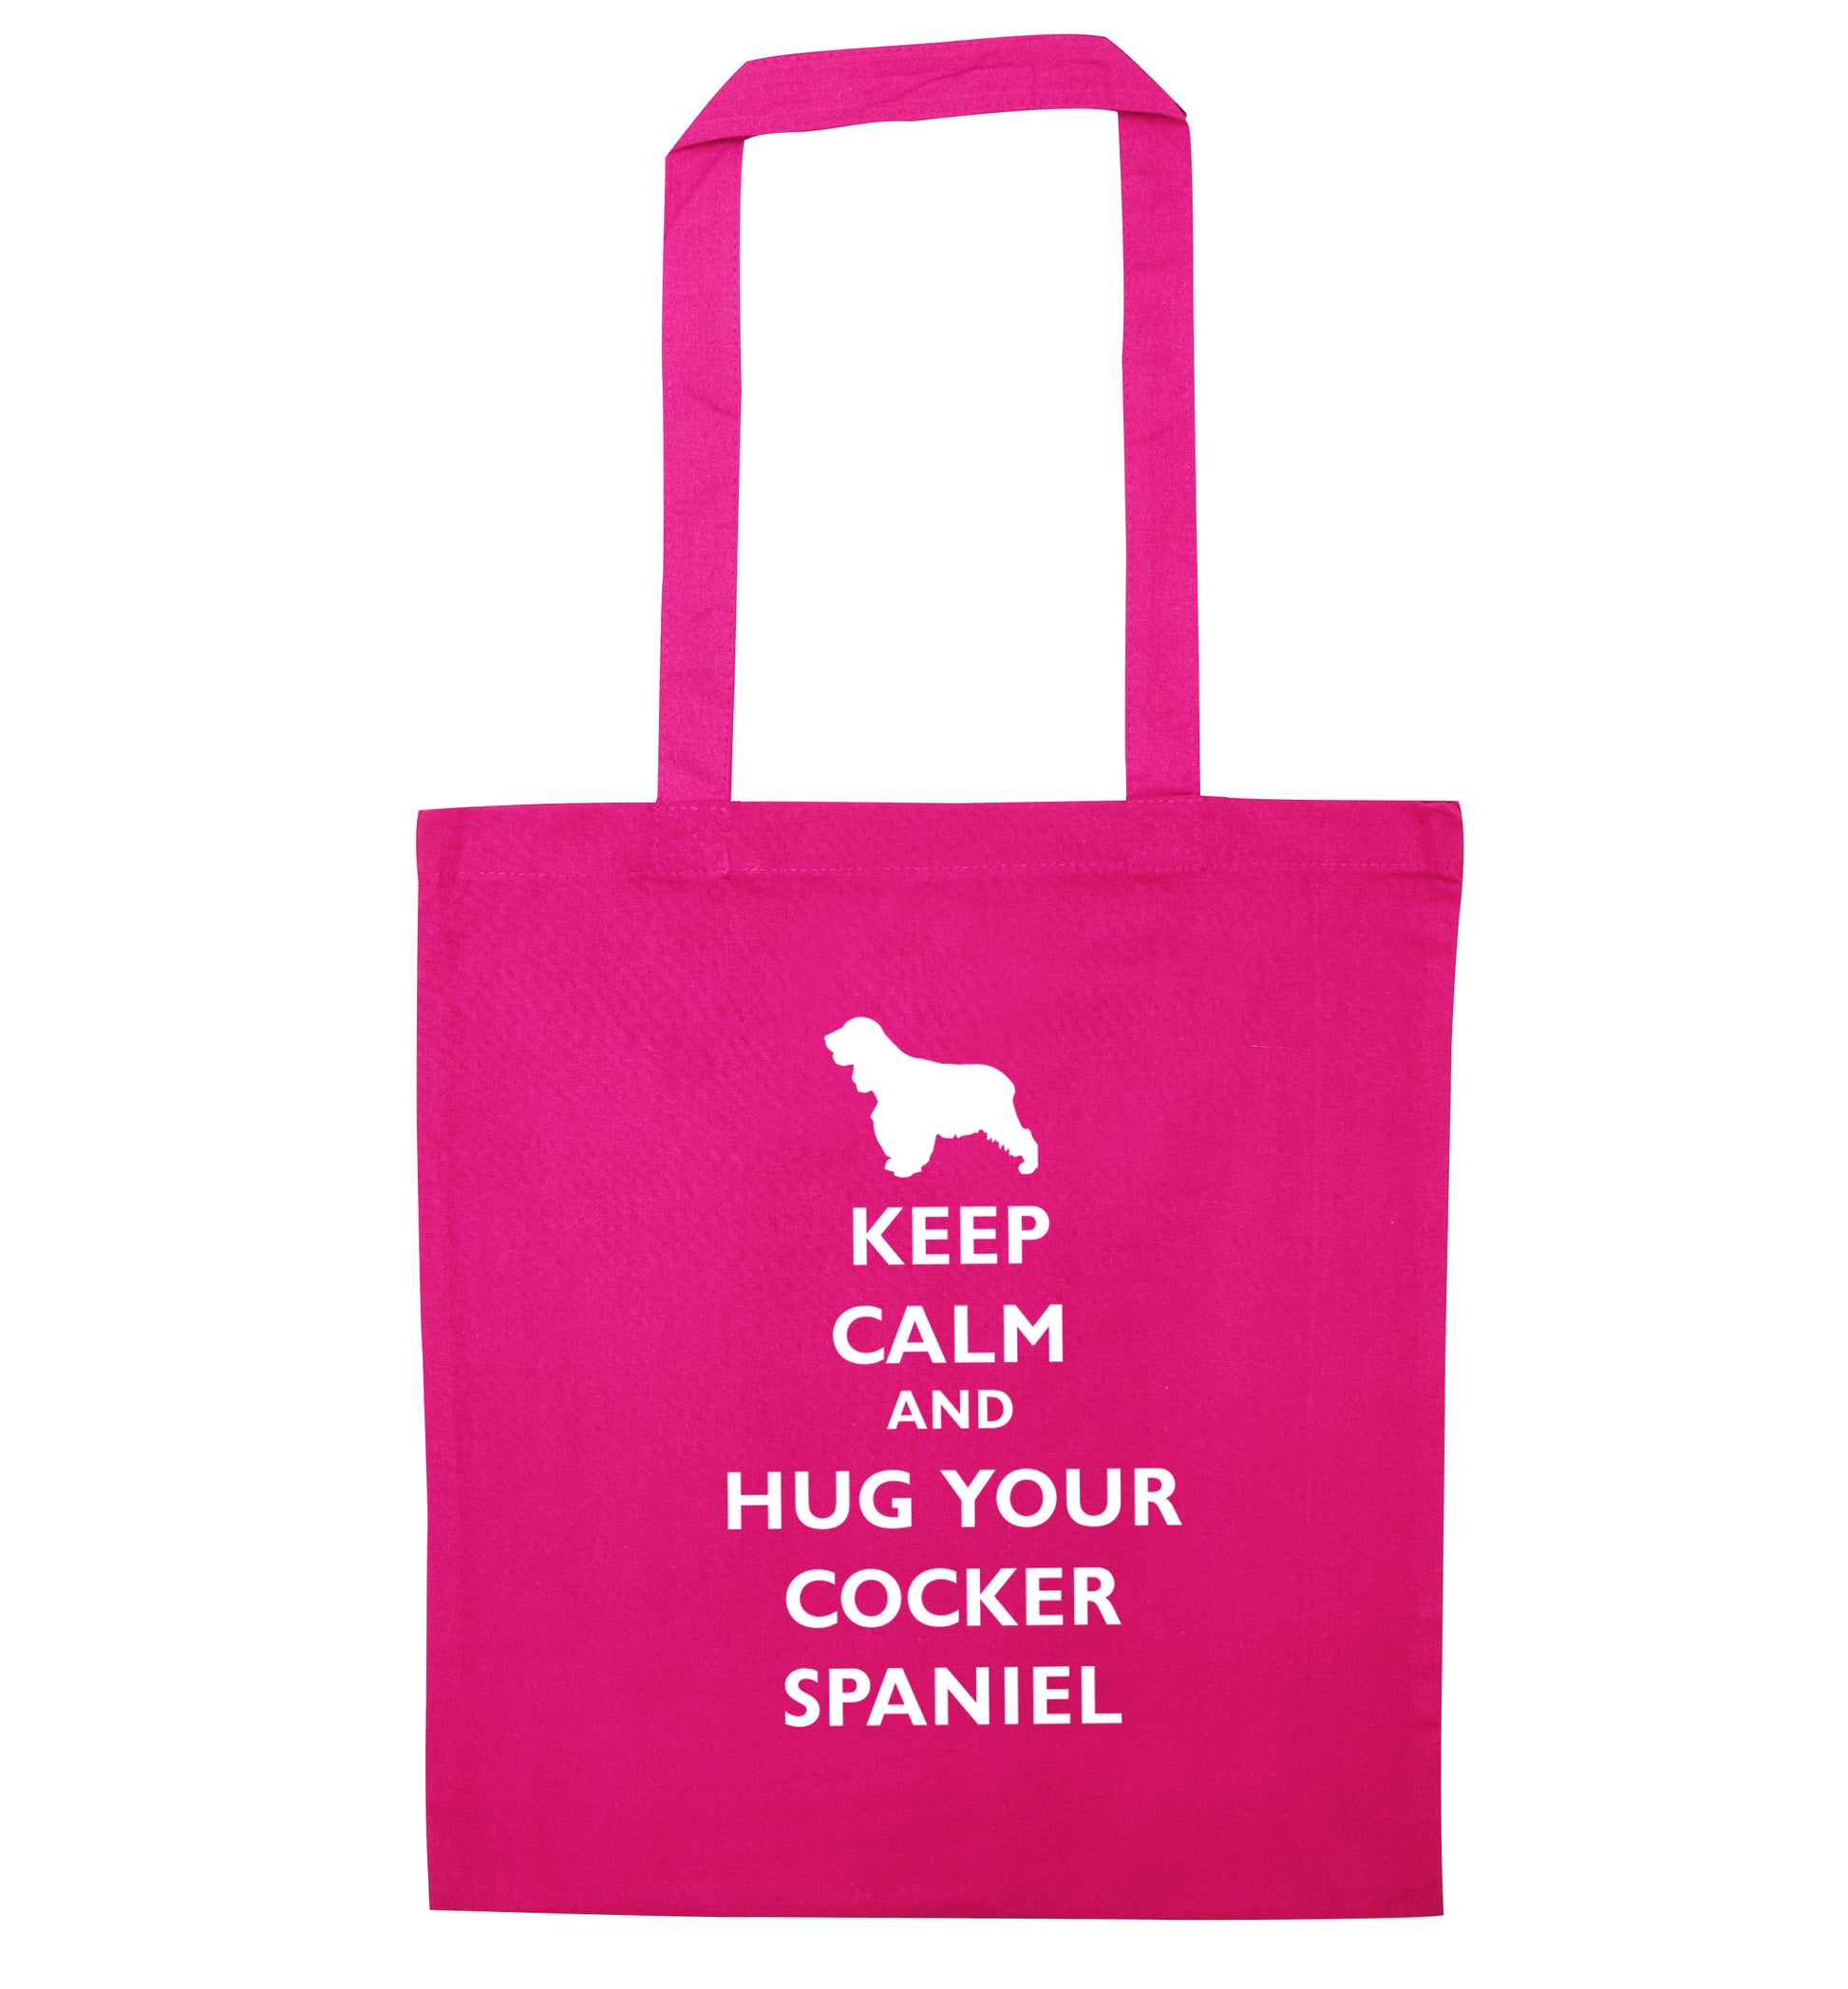 Keep calm and hug your cocker spaniel pink tote bag